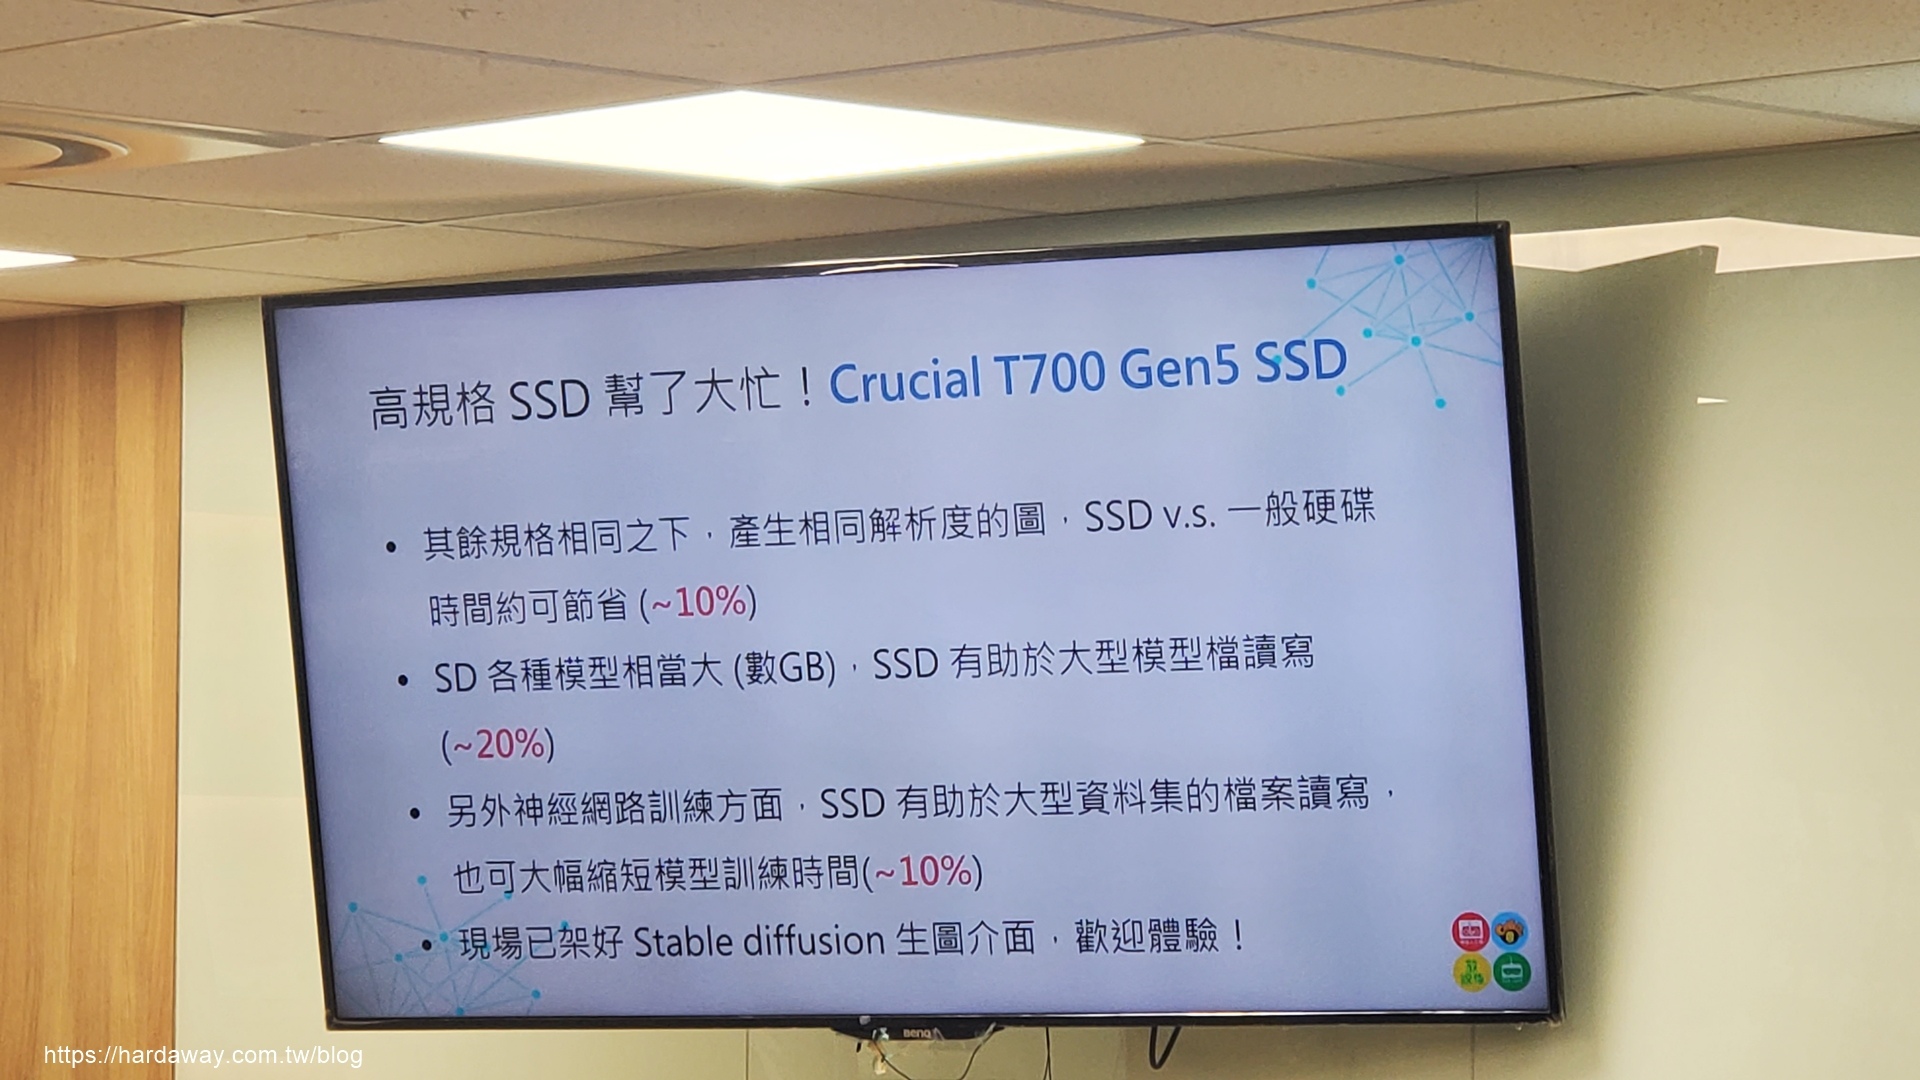 美光Micron Crucial T700 PCle Gen5 NVMe M.2 SSD